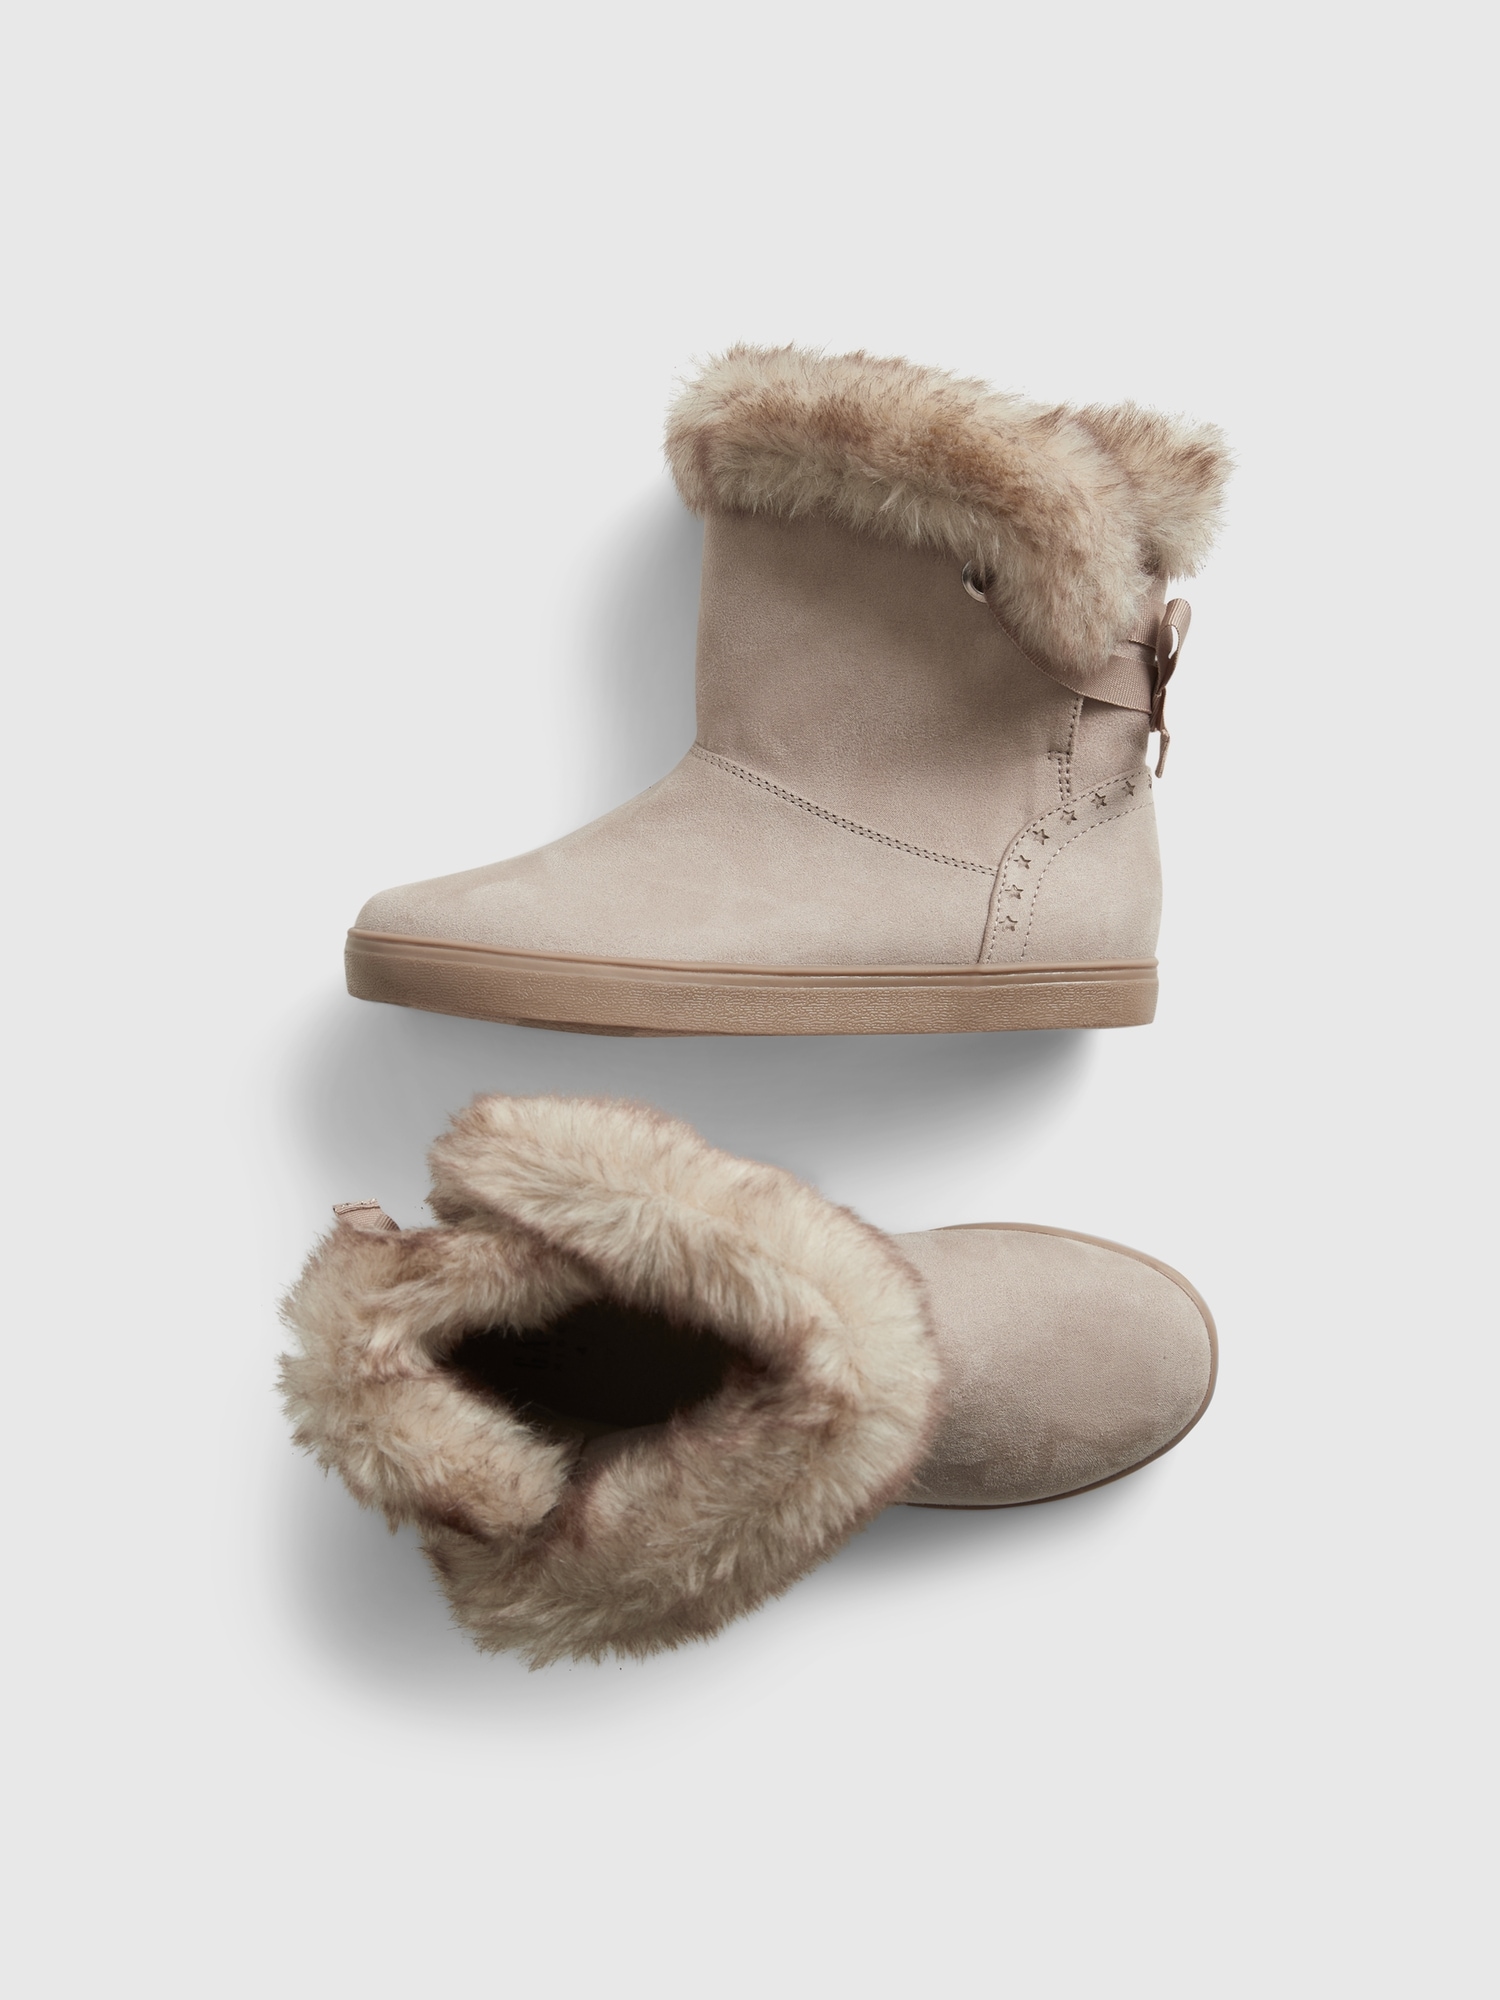 Kids Faux Fur Boots | Gap